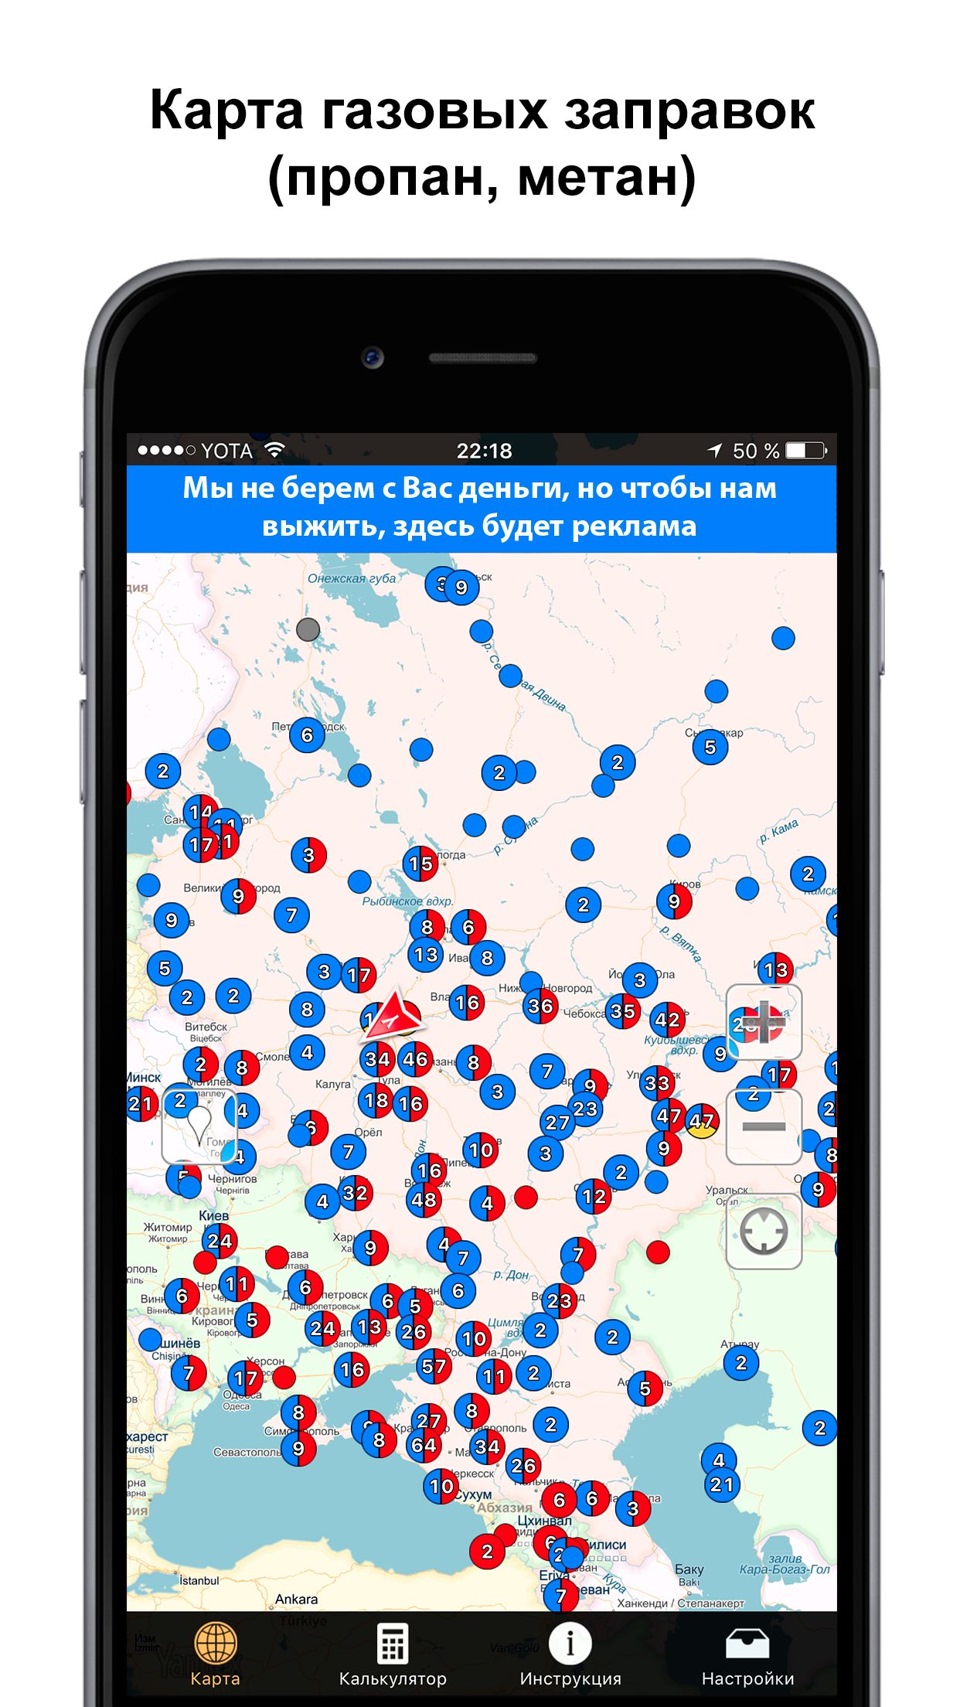 Заправка метан адреса. Карта газовых заправок. Заправки метан на карте. Карта газовых заправок метан. Газовые заправки на карте России.